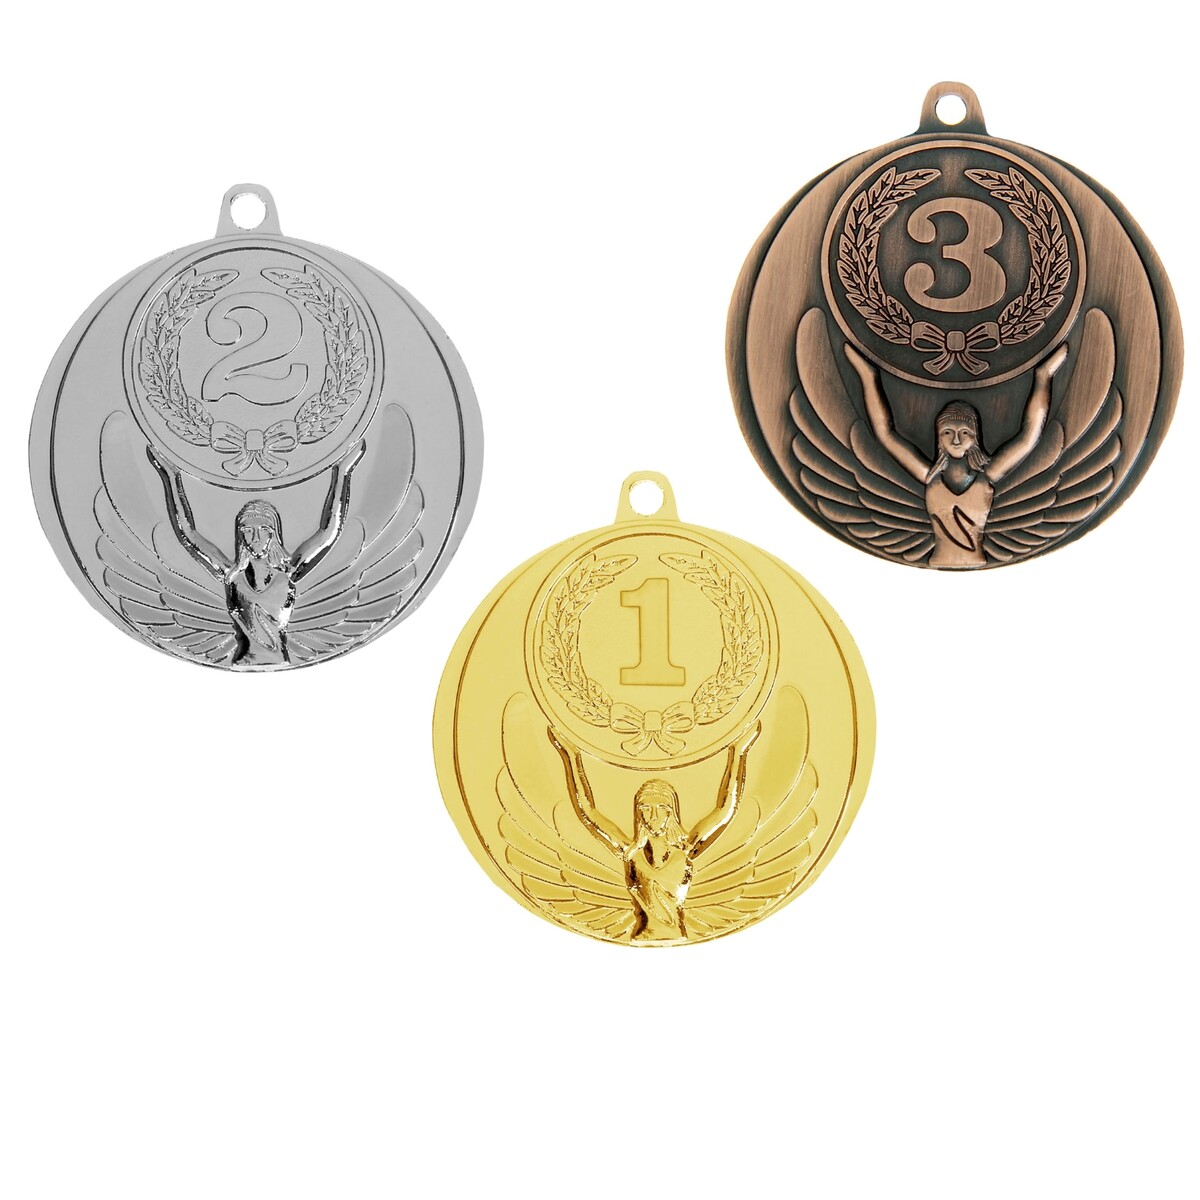 Медаль призовая 017 диам 4,5 см. 3 место. цвет бронз. без ленты медаль призовая 196 диам 5 см 3 место бронз без ленты